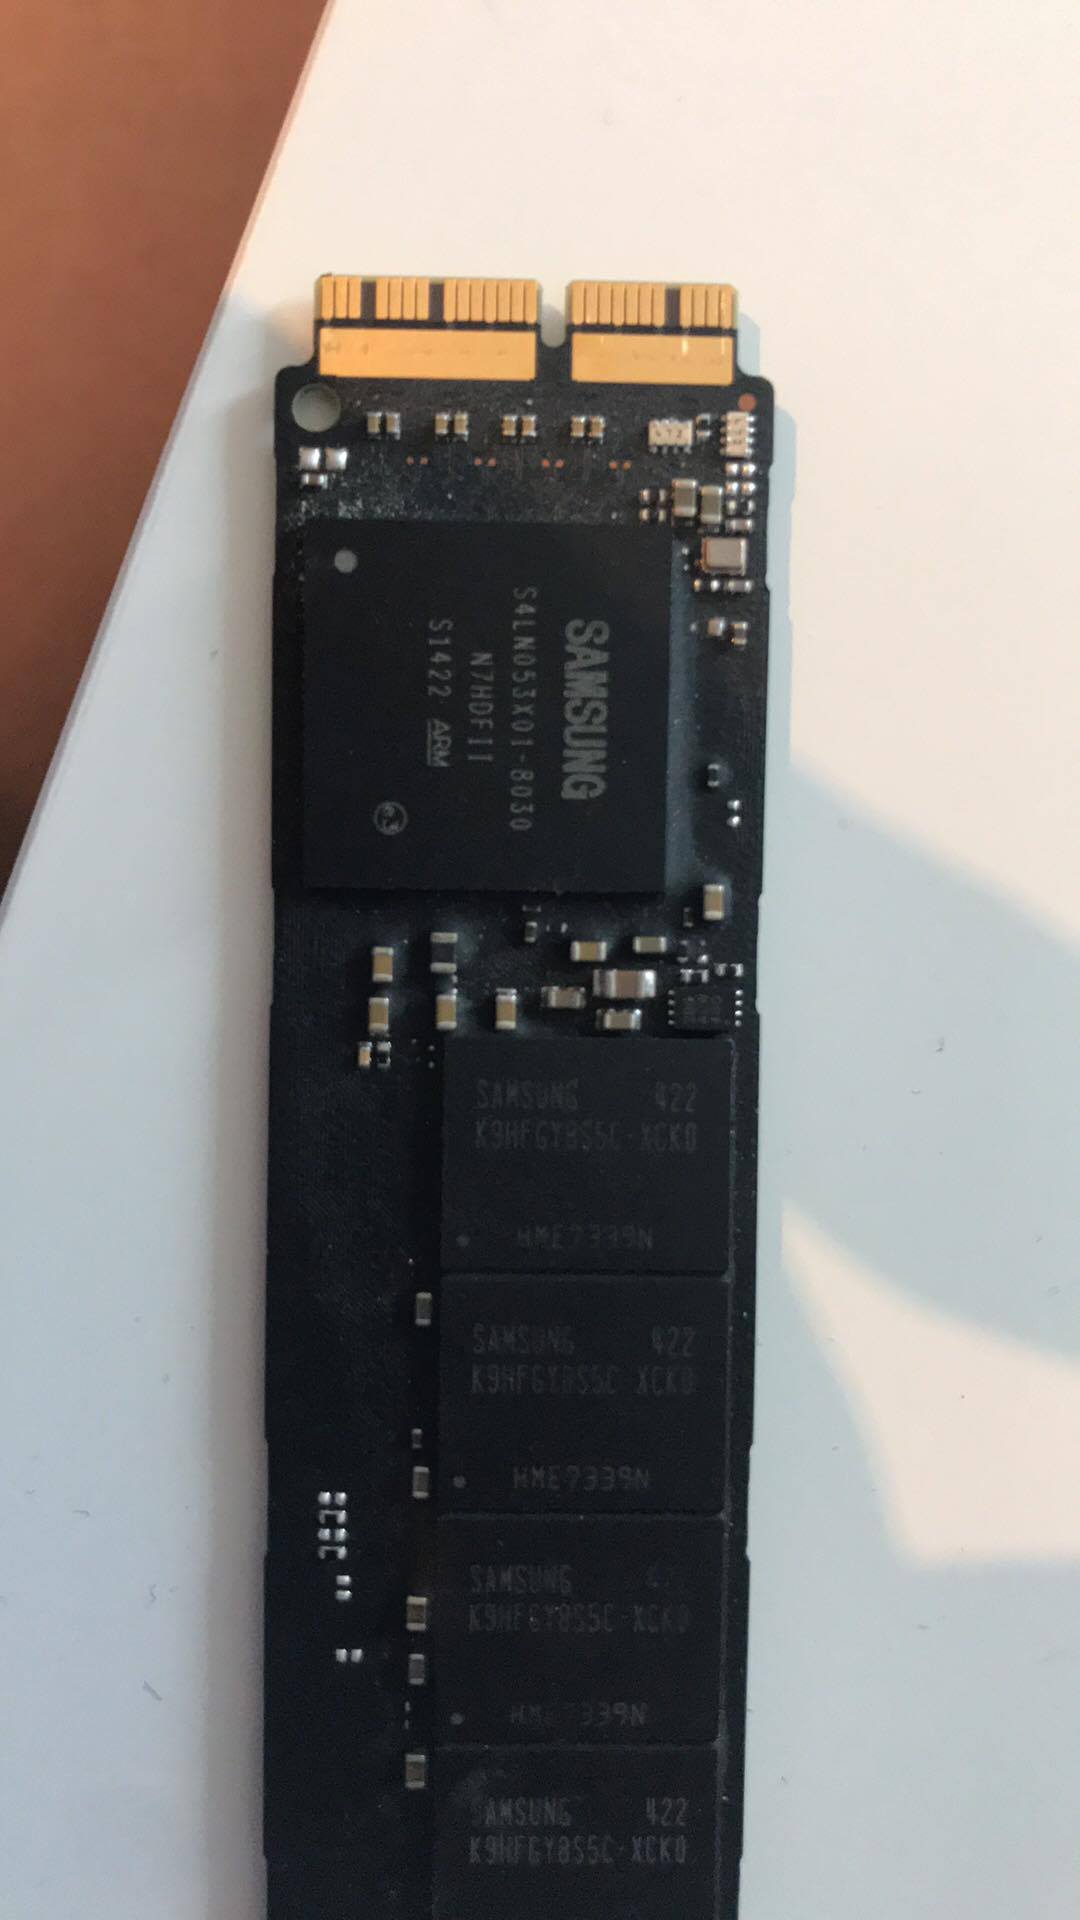 HDD/SSD SATA III Adaptateur Compatible avec MacBook Pro Compatible avec SuperDrive remplace SuperDrive - TheNatural2020 Argent boîtier USB Slim SATA - SATA 9.5 mm Caddy kit 